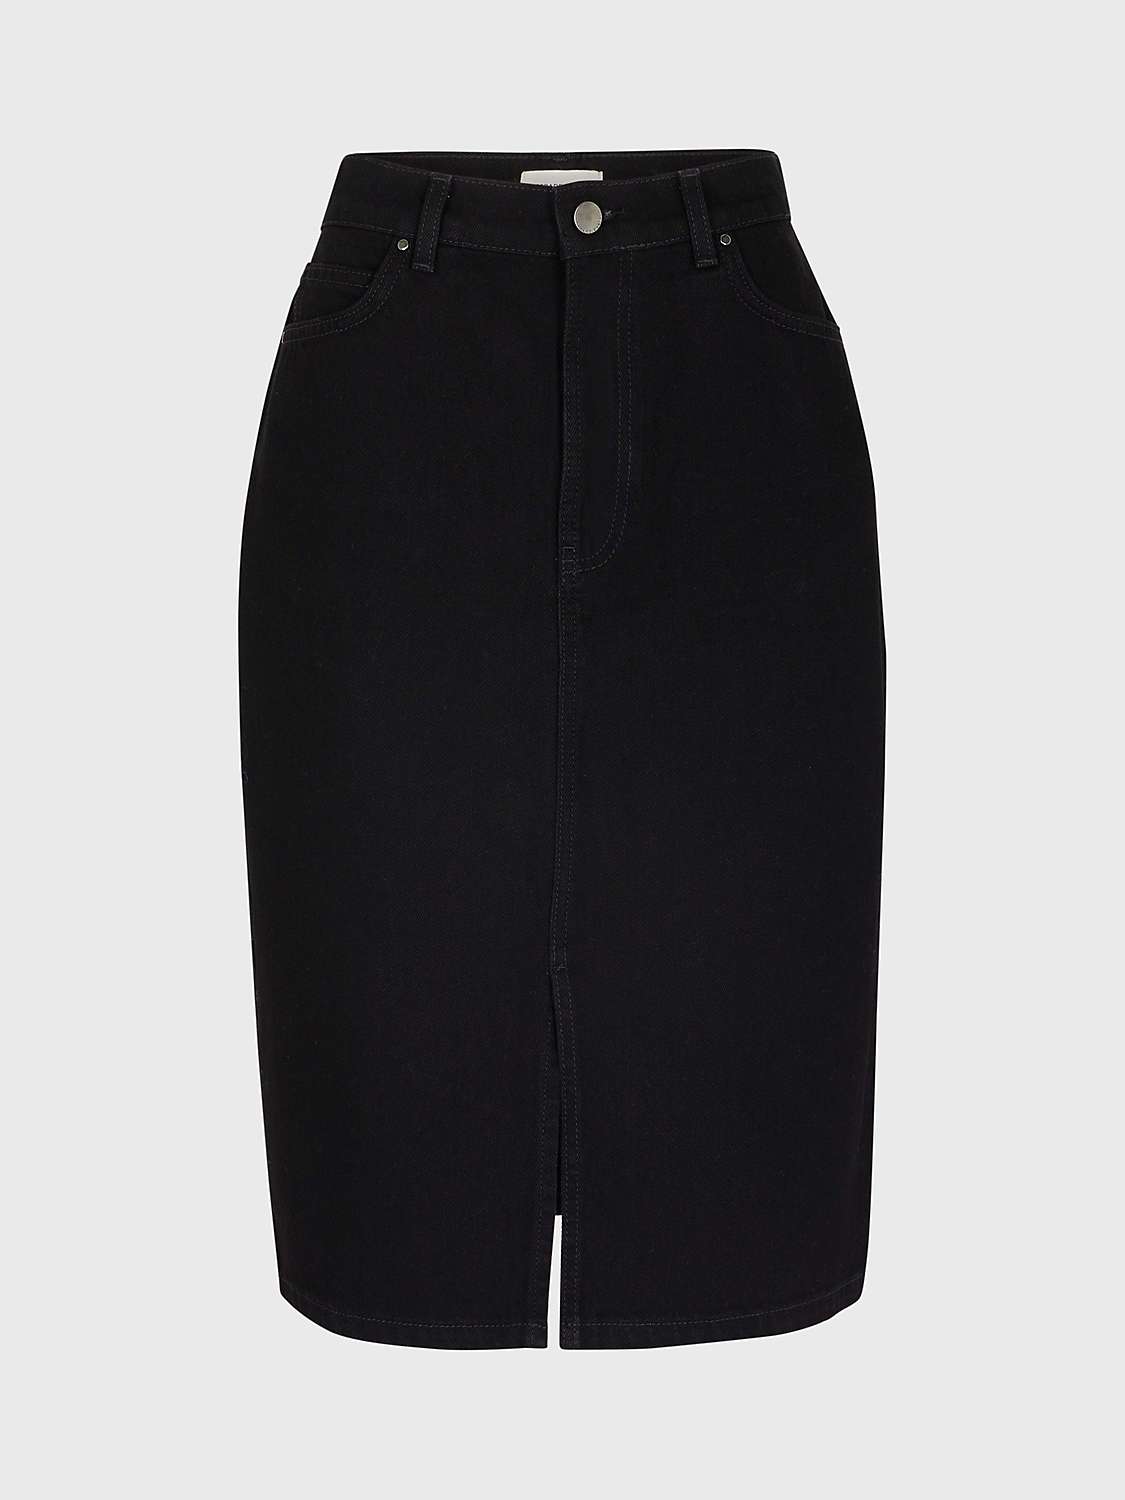 Gerard Darel Bicente Denim Skirt, Black at John Lewis & Partners